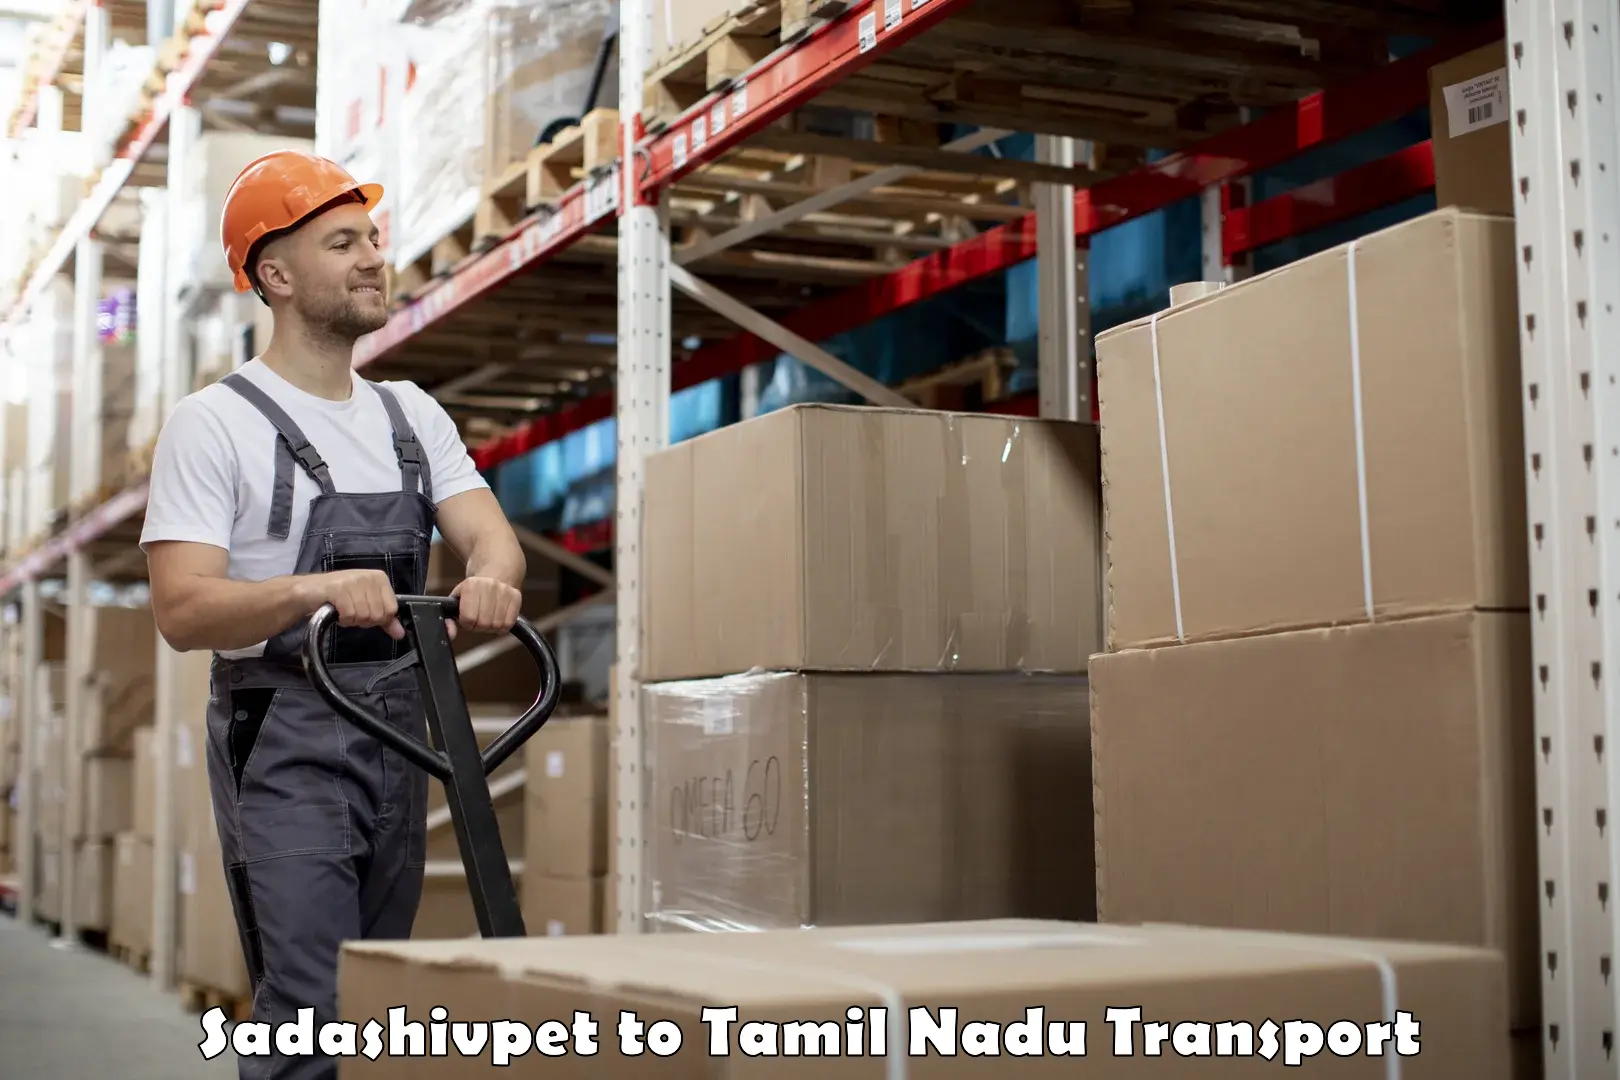 Goods transport services Sadashivpet to Tamil Nadu